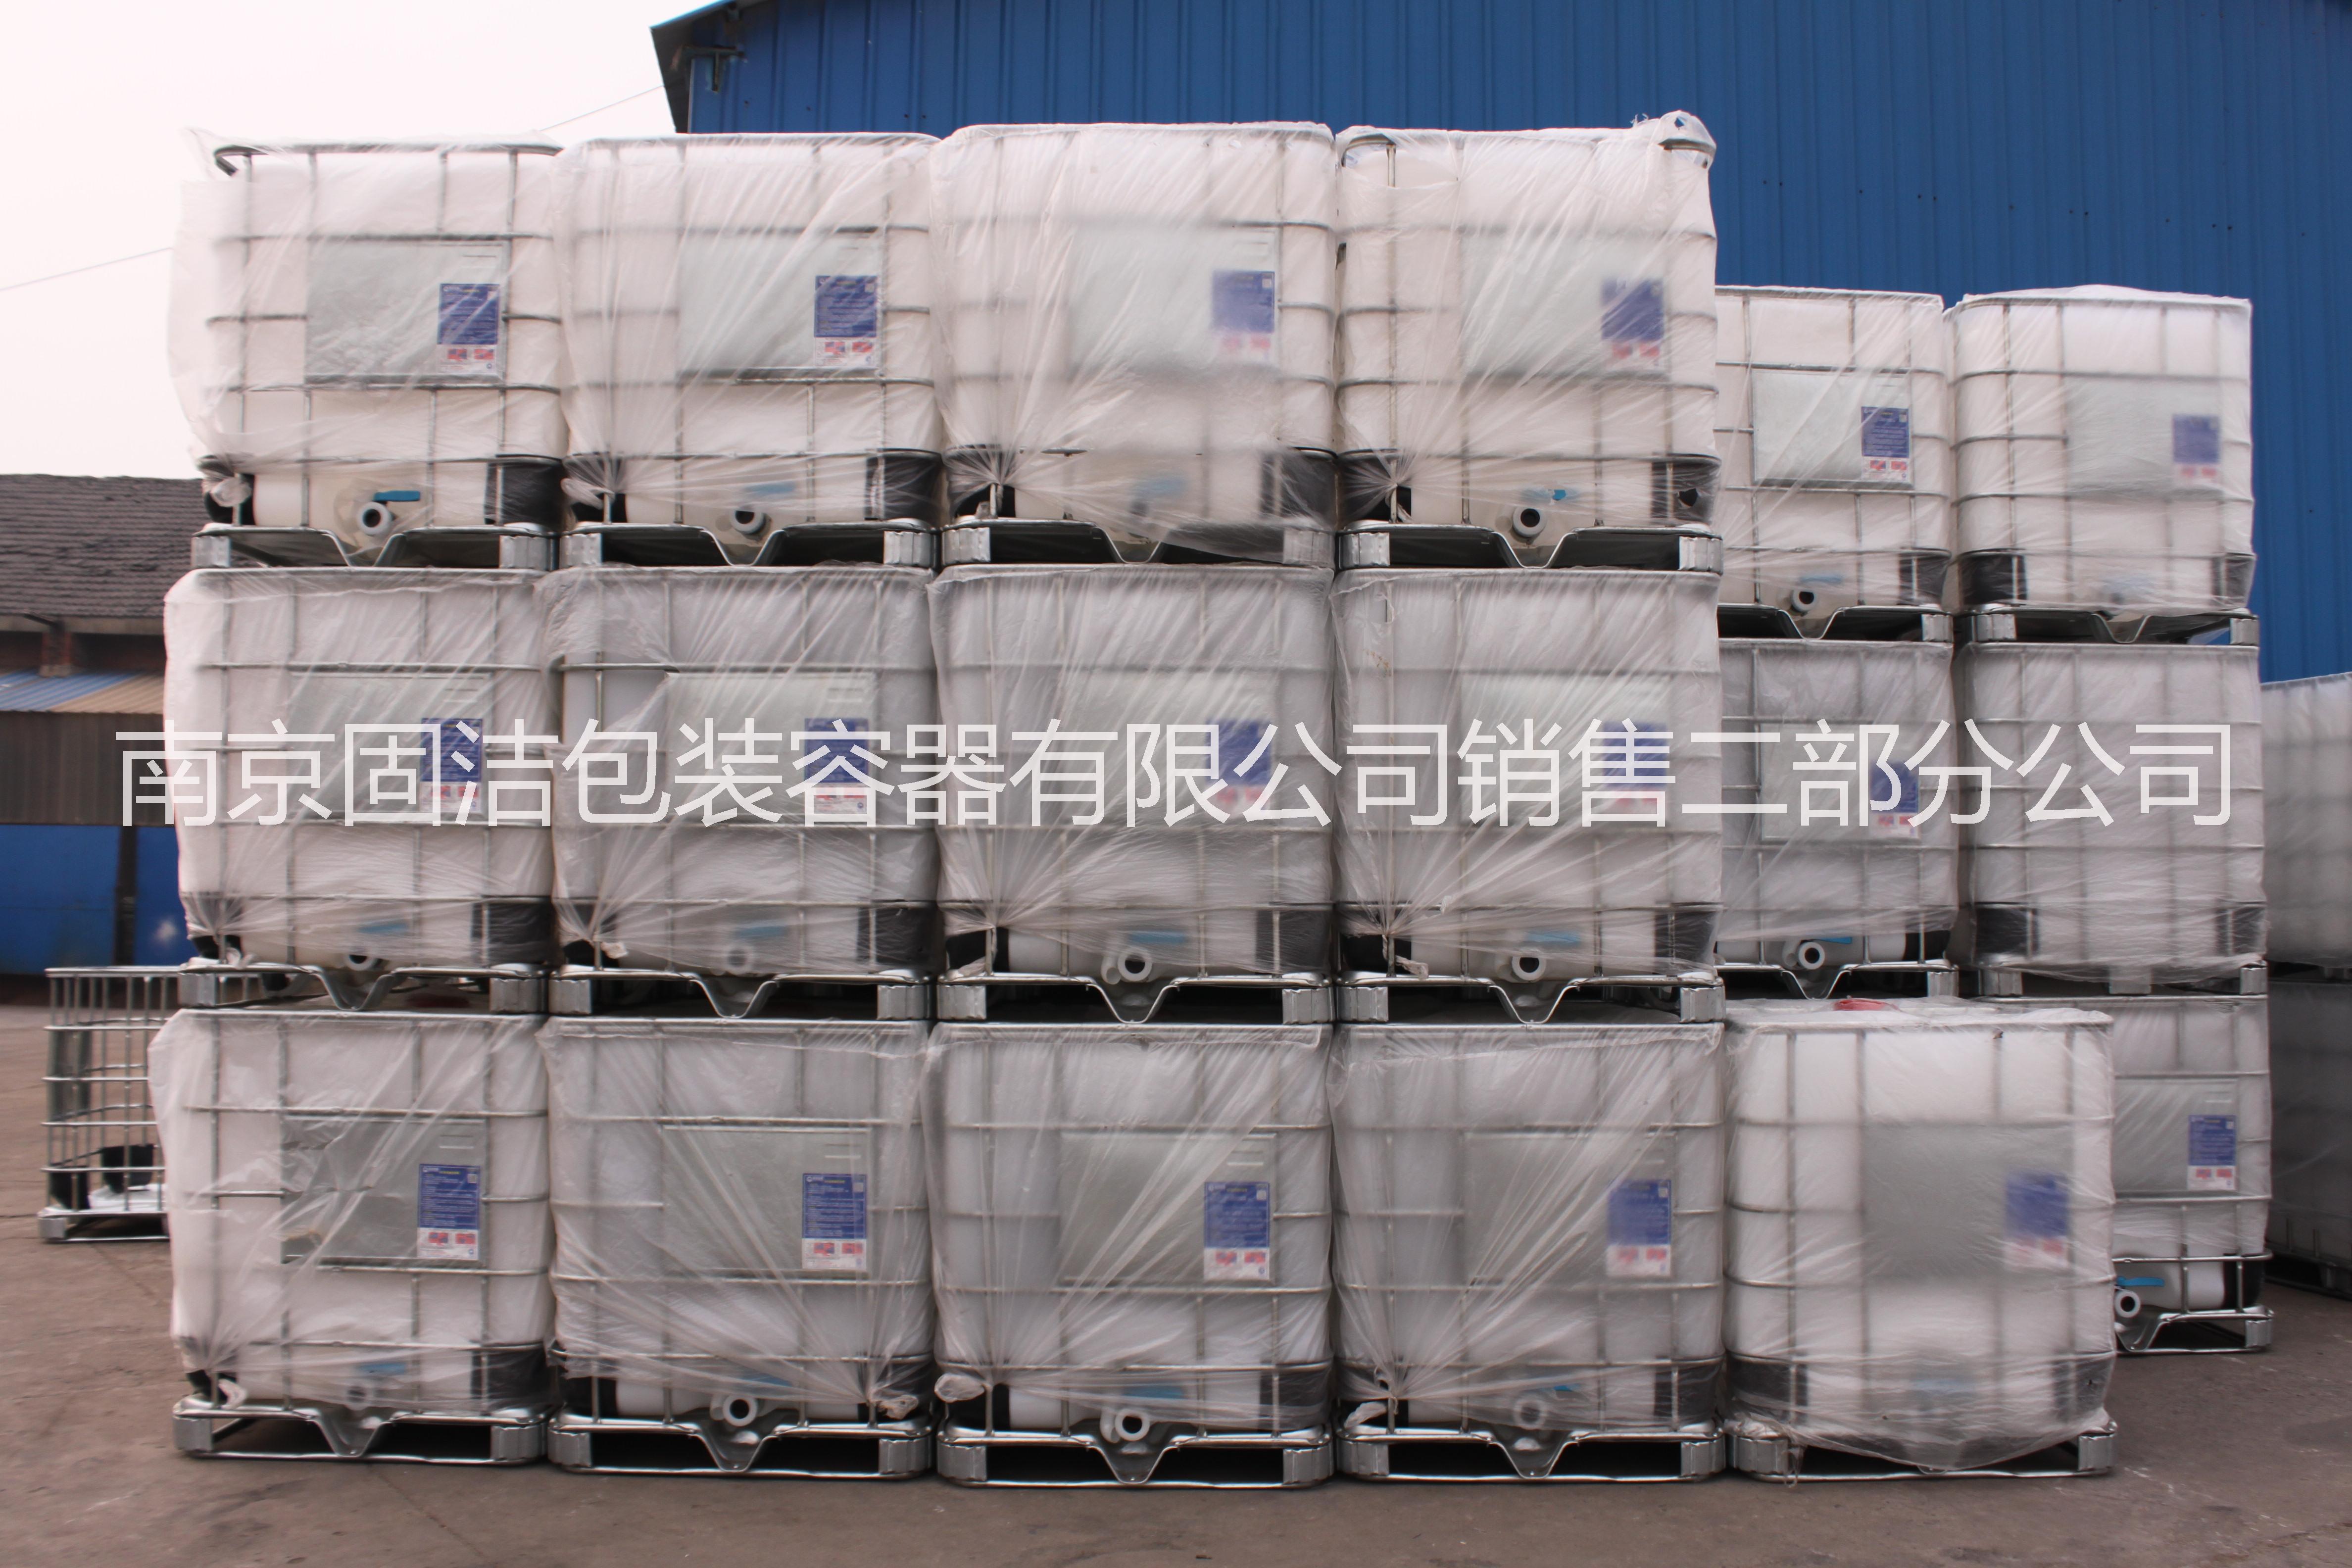 南京市液体化工1000L吨桶ibc吨桶厂家长期供应液体化工1000L吨桶ibc吨桶塑料桶